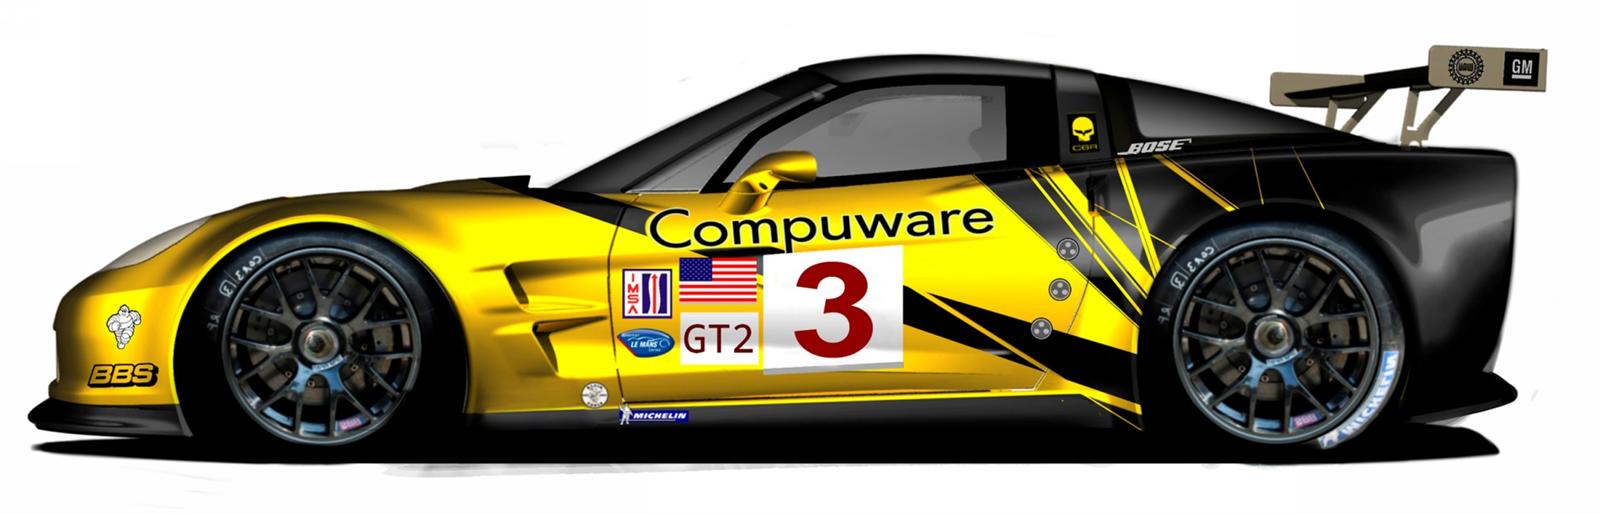 2009 Chevrolet Corvette C6.R GT2